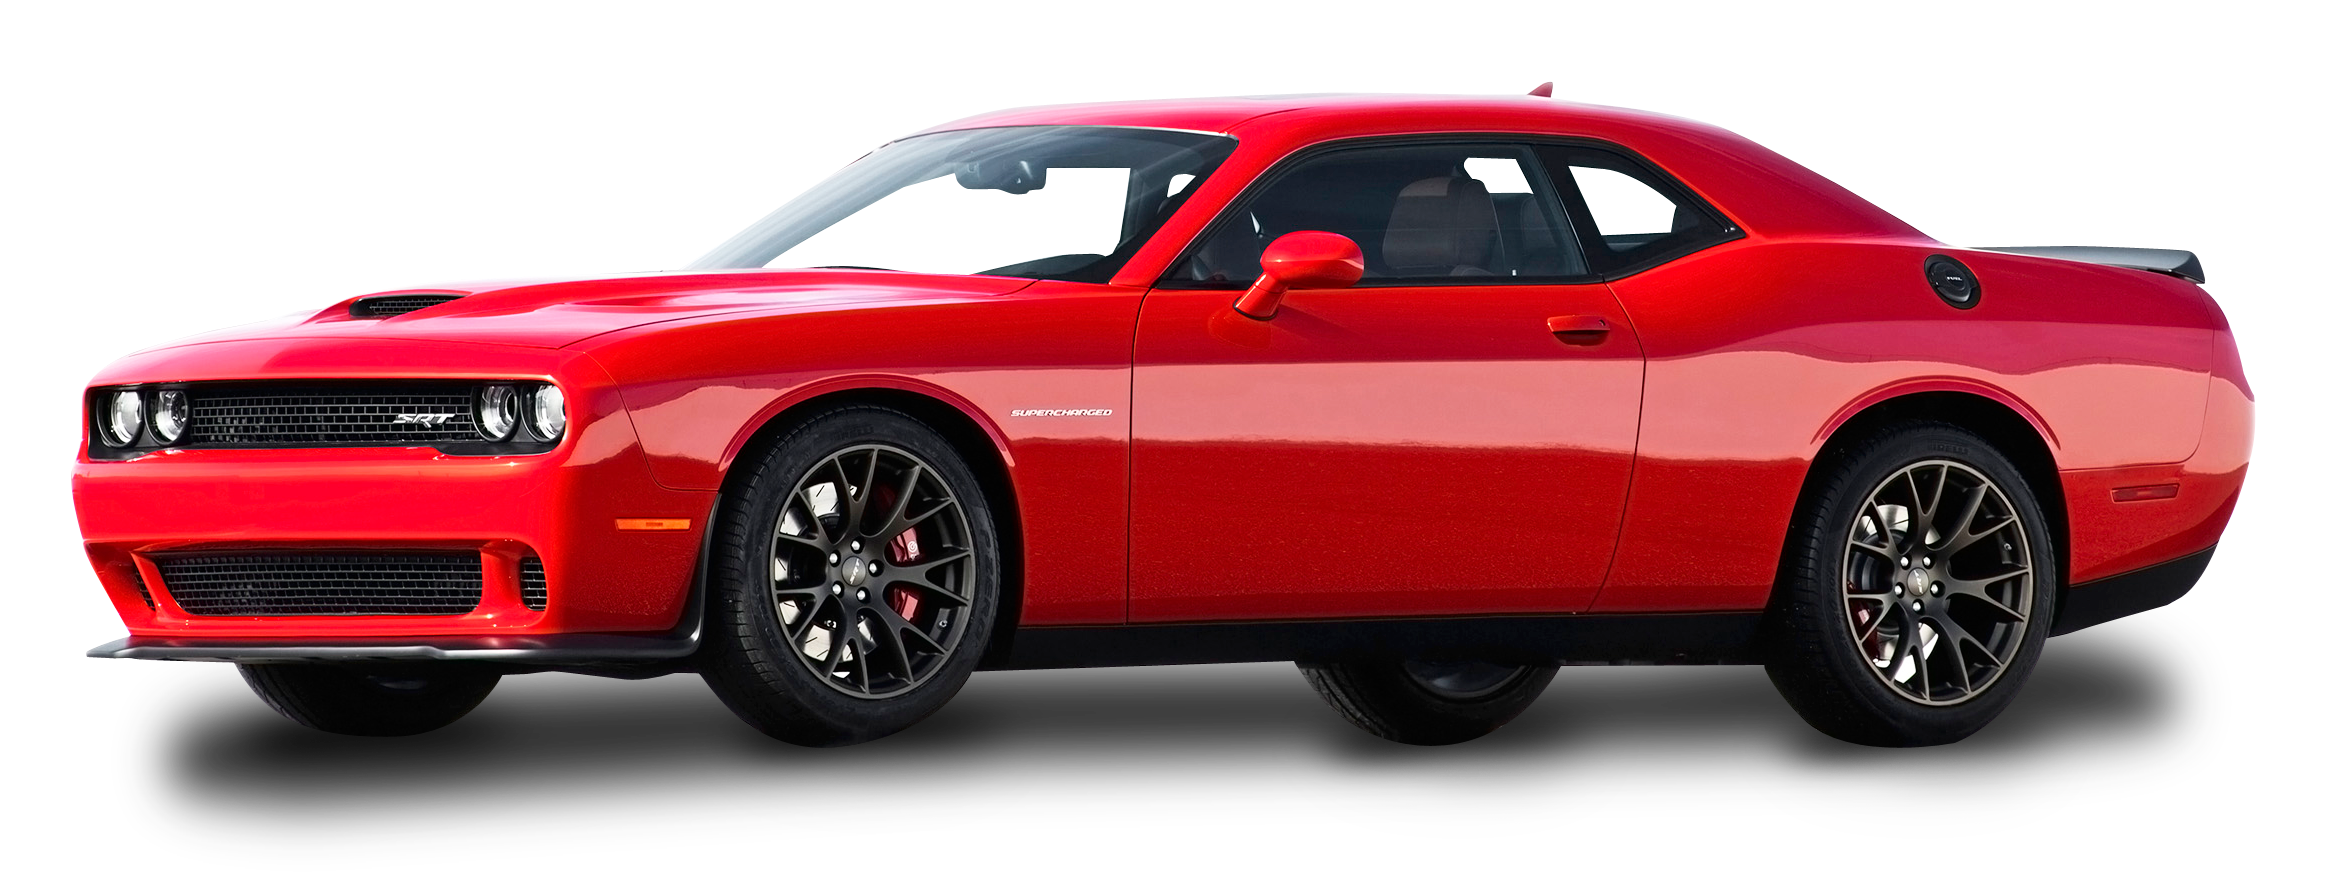 Red Dodge Challenger Car PNG Image